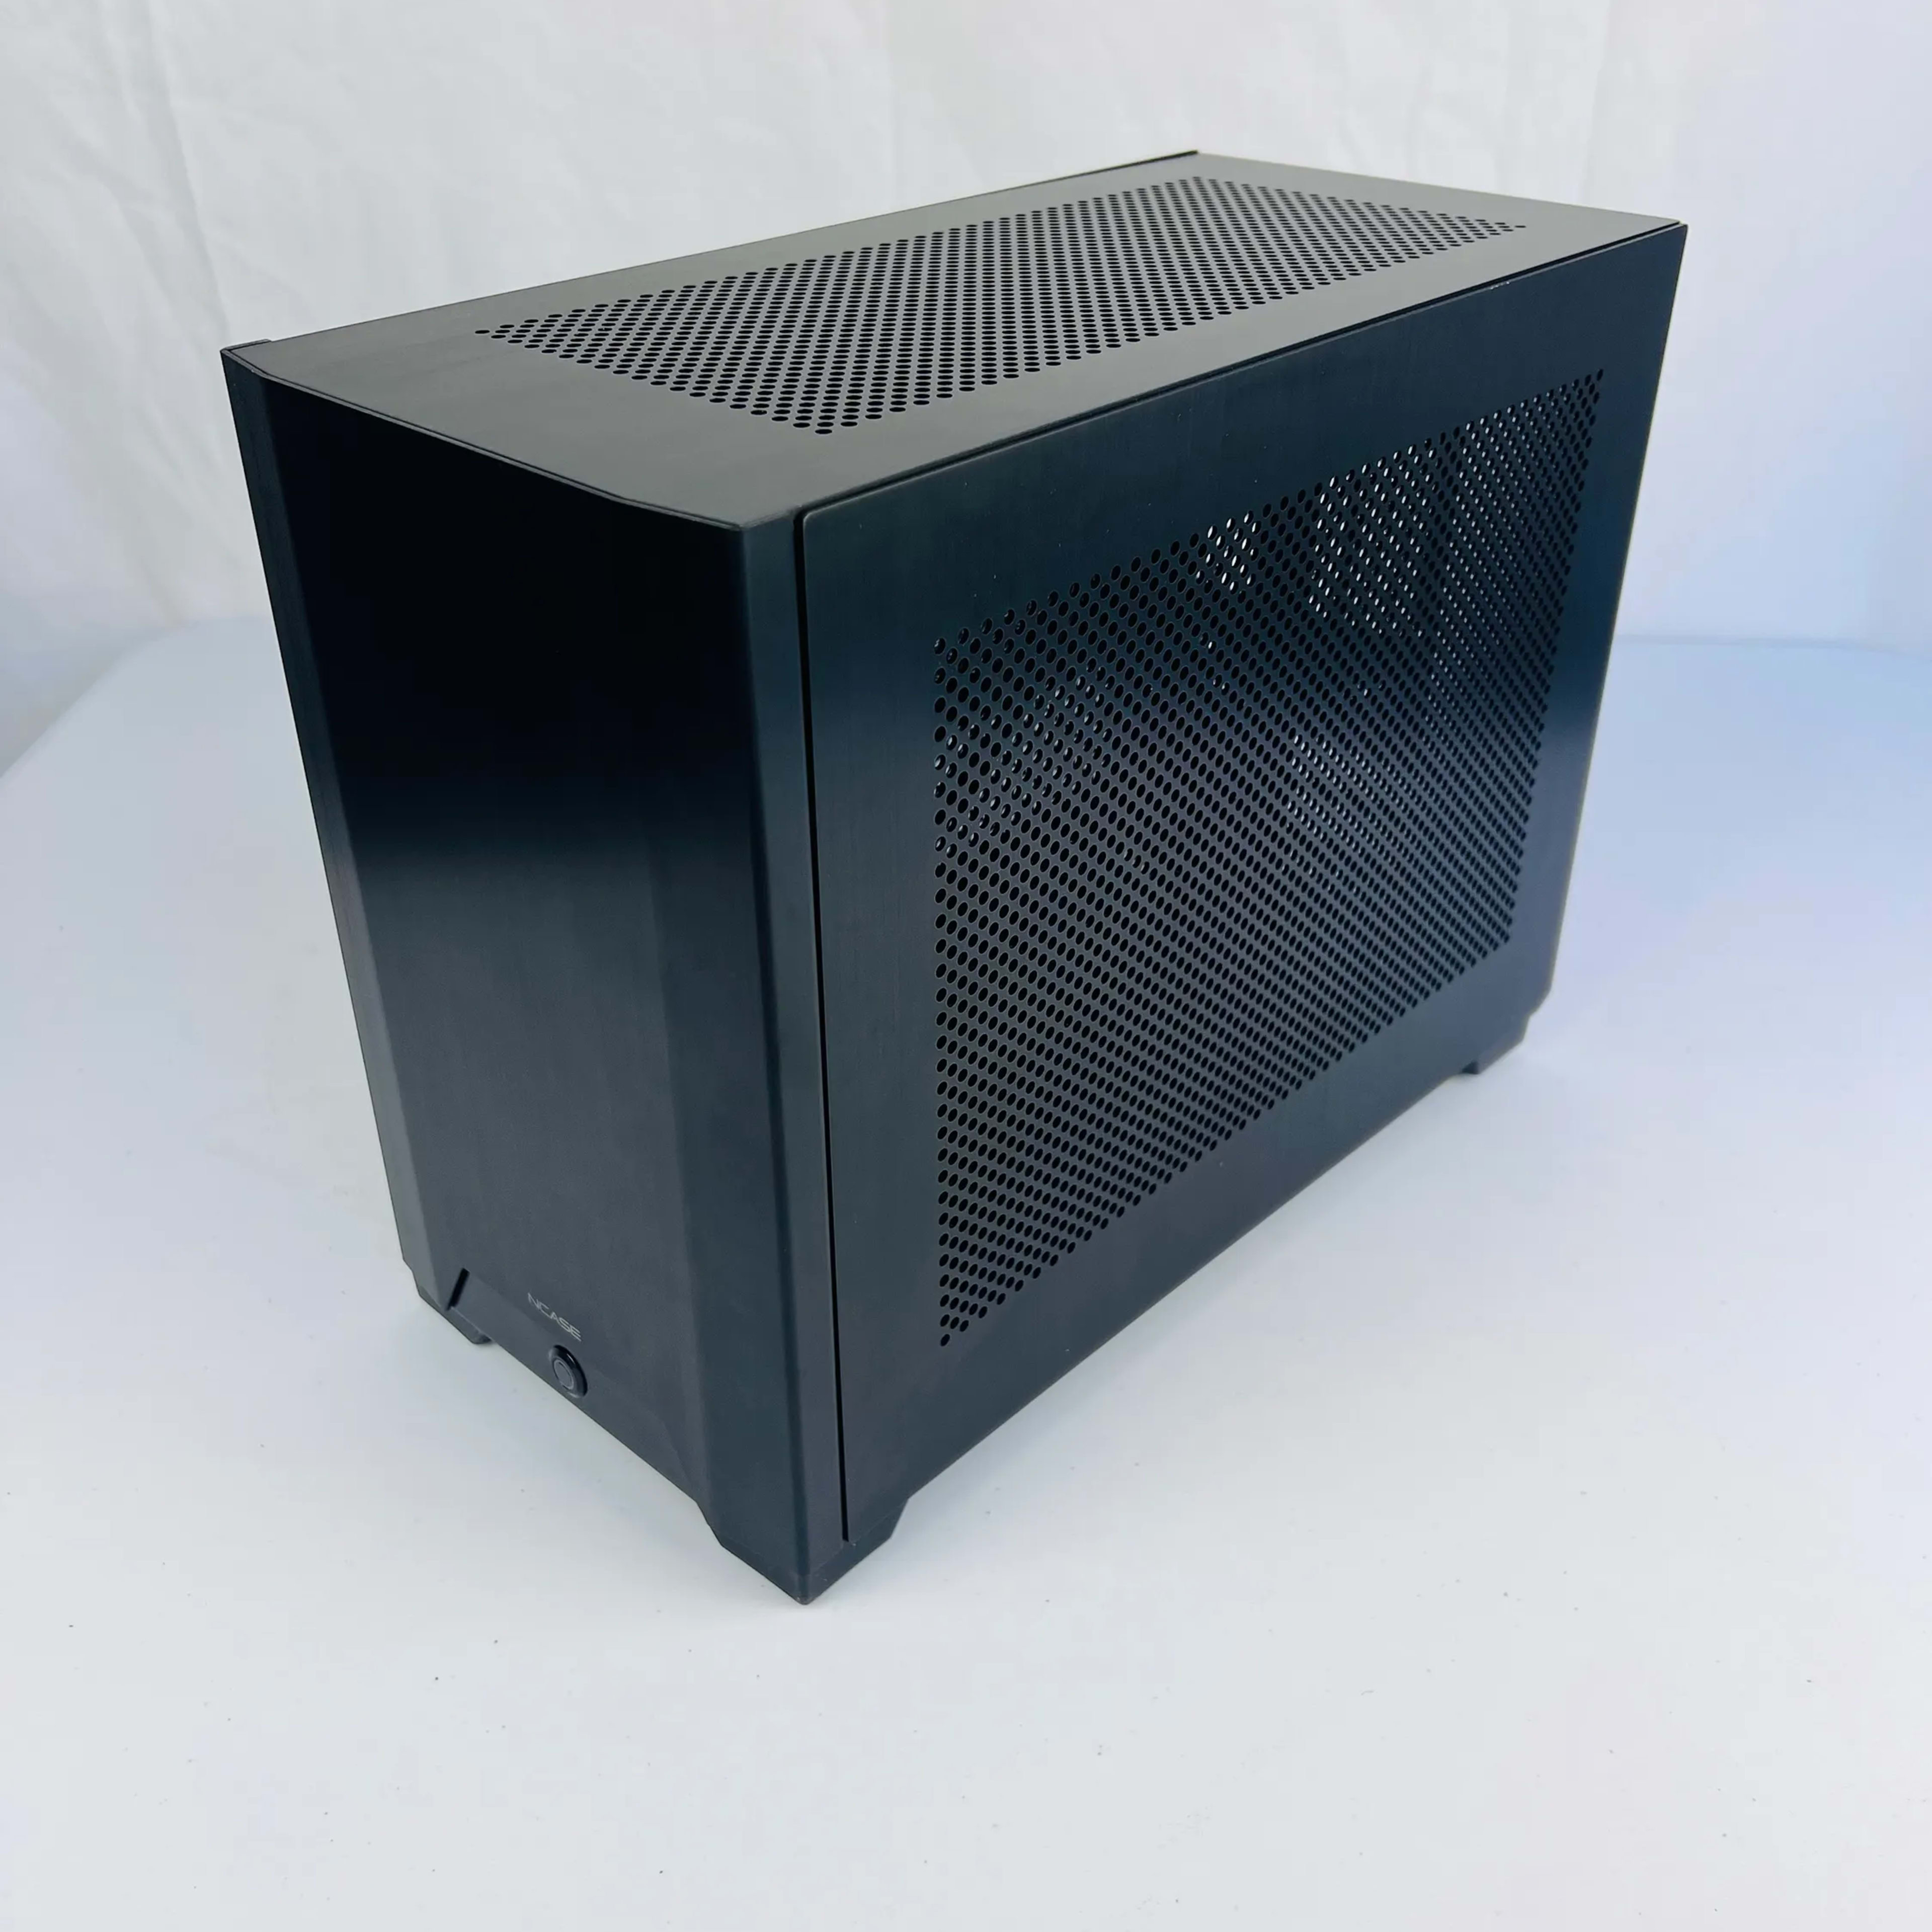 NCASE M1 V6.1 Mini ITX Tower Case (Black)